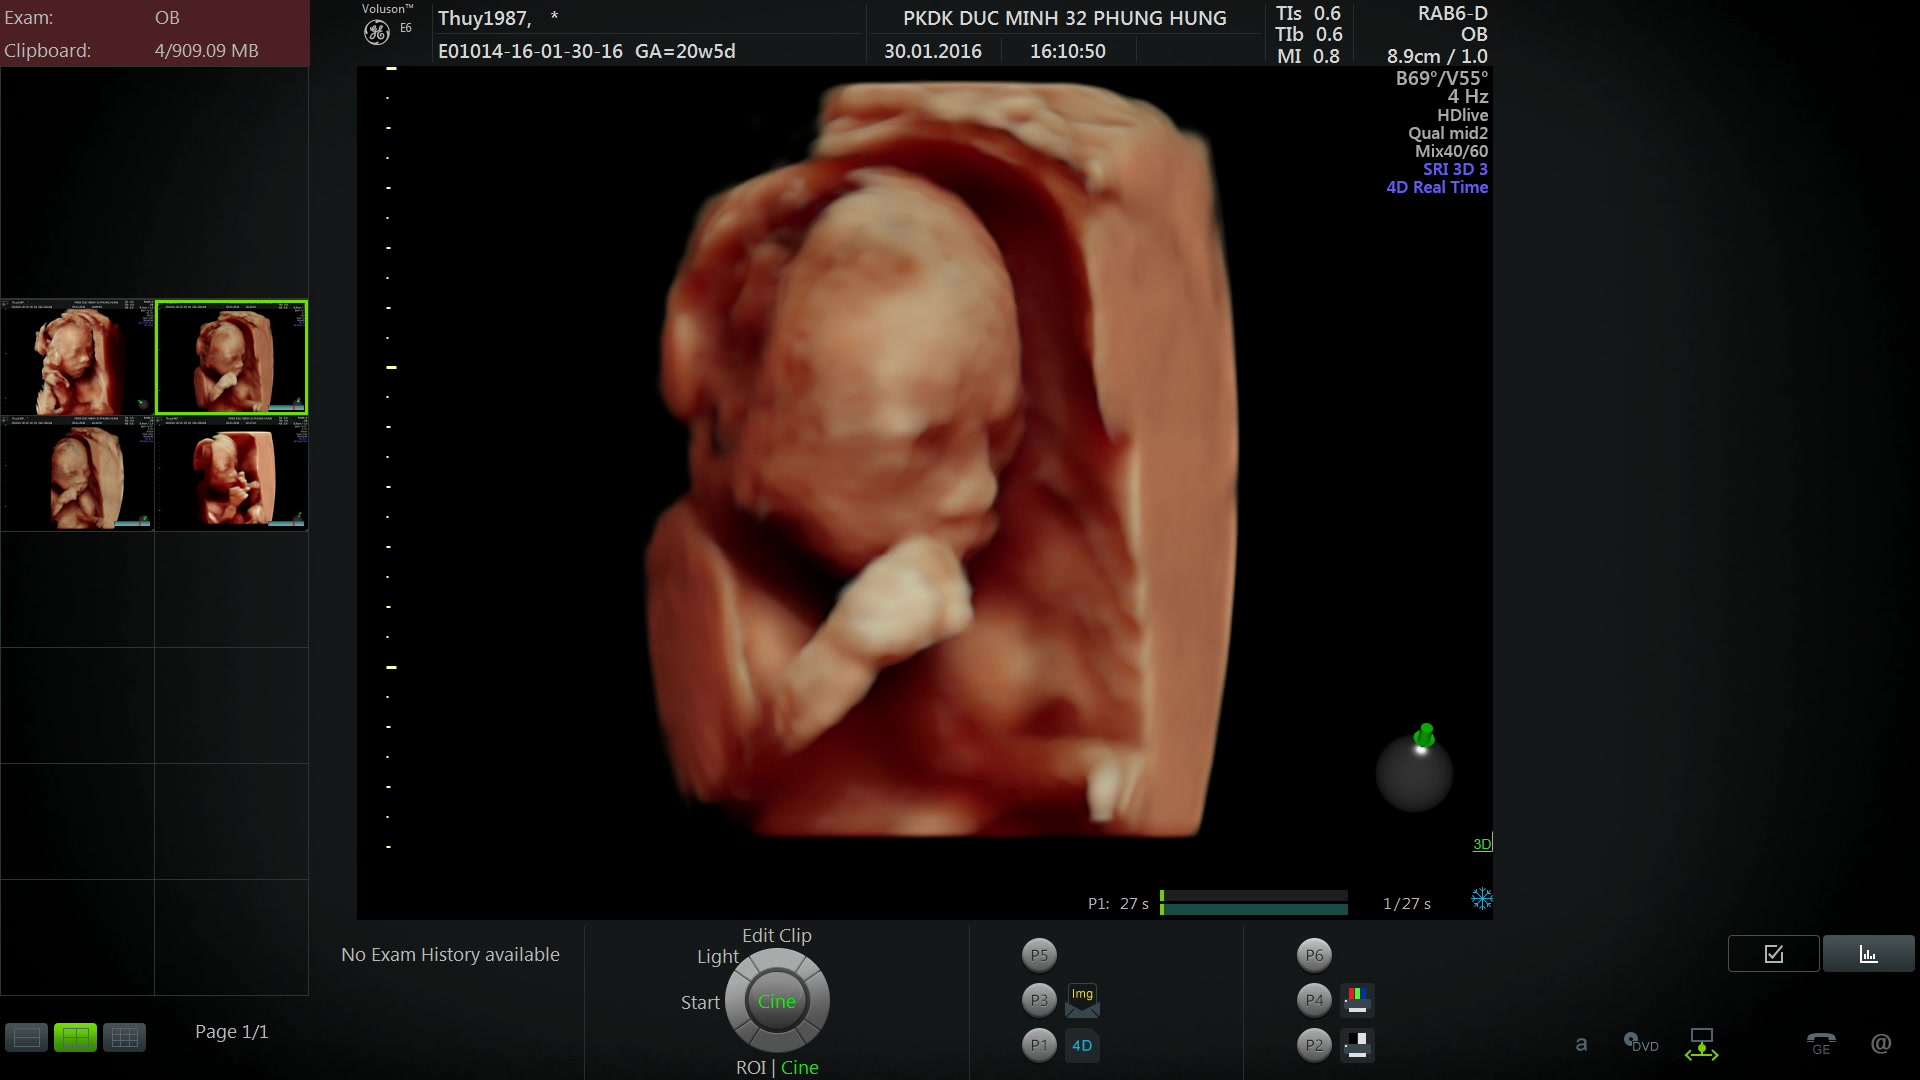 Hình ảnh thai nhi 20 tuần tuổi đã có đầy đủ các bộ phận